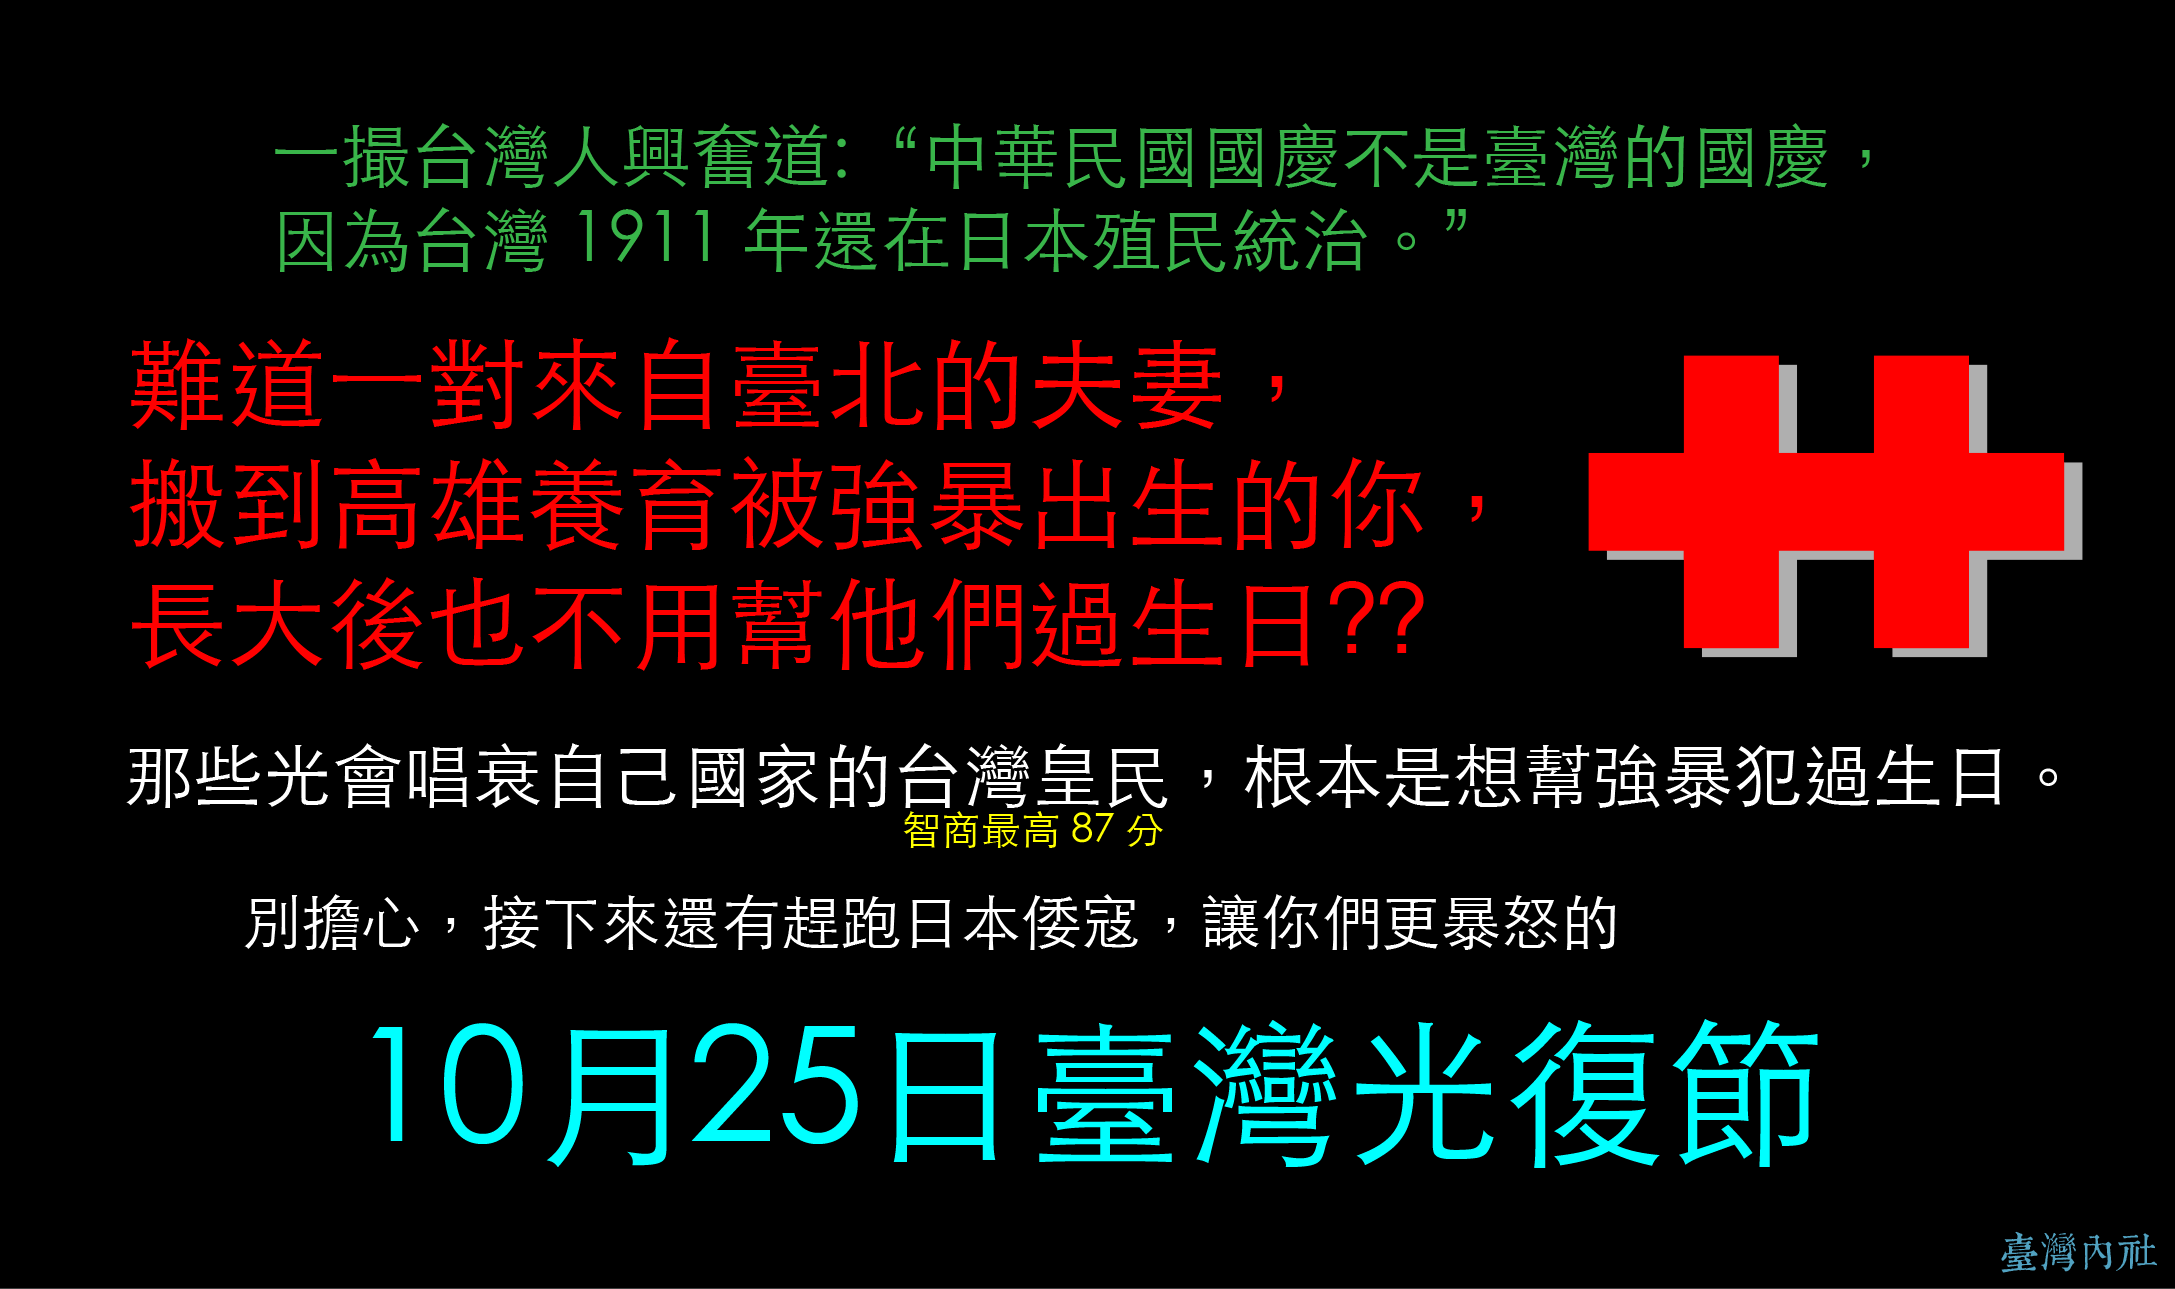 皇民說:: 中華民國國慶不是臺灣的國慶， 因為台灣 1911 年還在日本殖民統治。